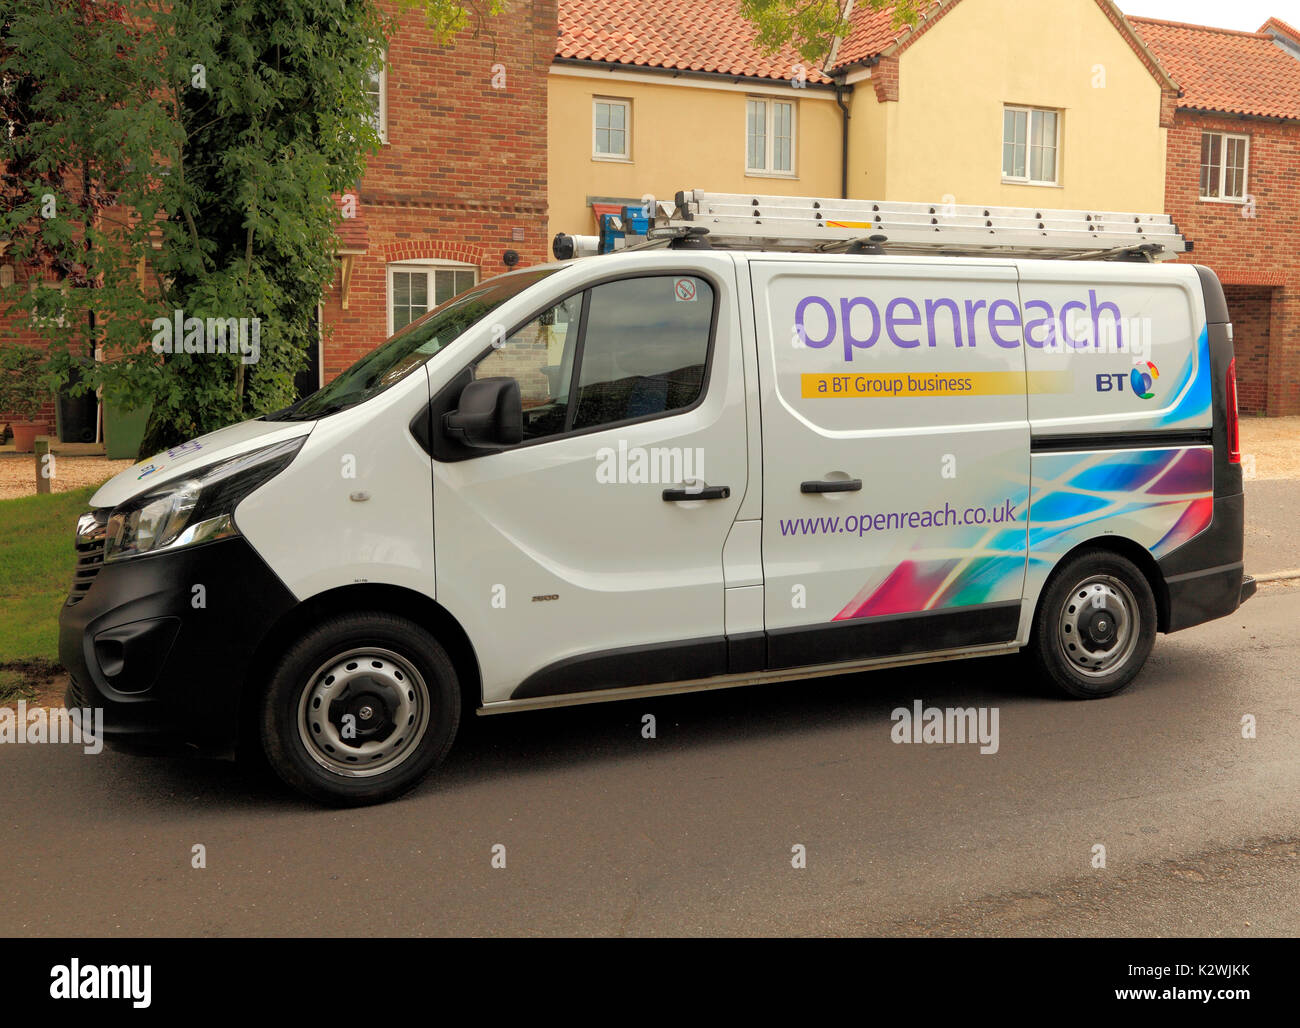 Openreach, aprire raggiungere, BT, British Telecom, van, assistenza, riparazione, veicolo, veicoli furgoni, riparazioni, manutenzione, England, Regno Unito Foto Stock